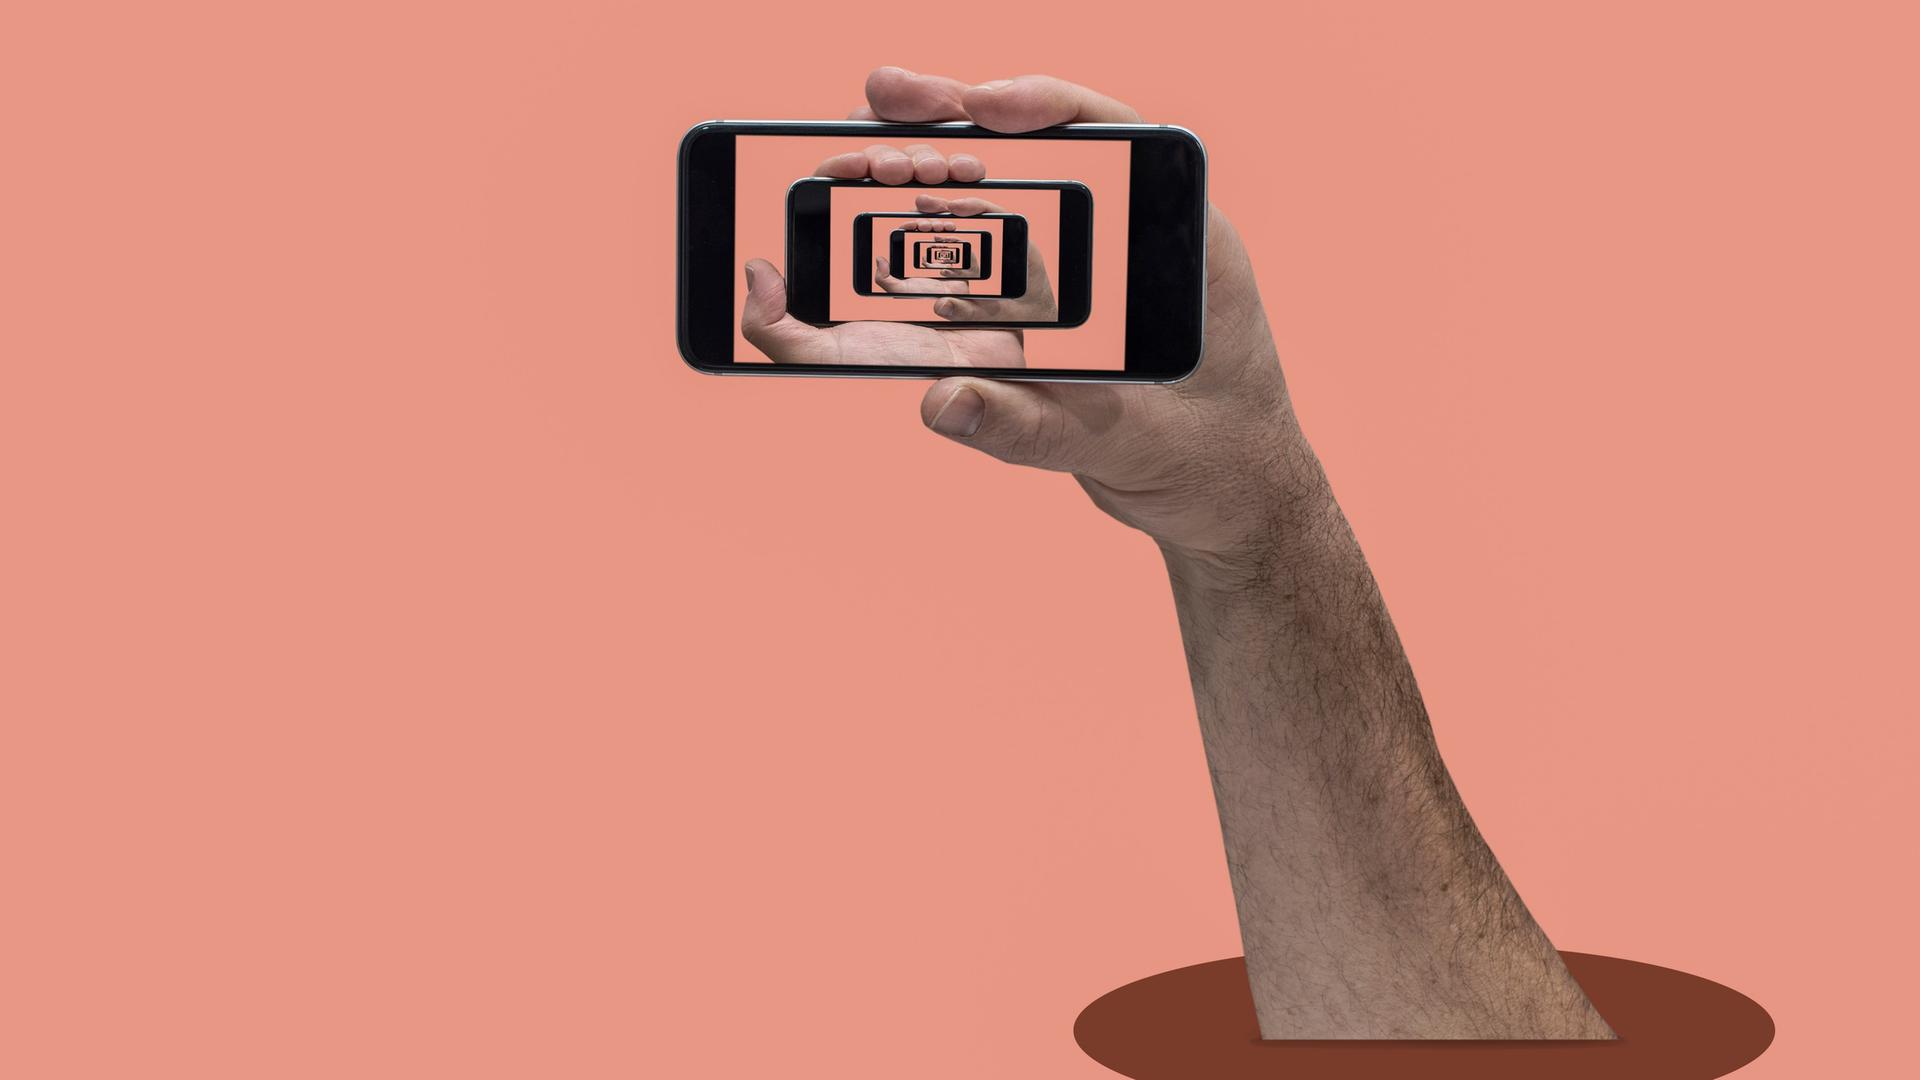 Eine Hand vor pfirsichfarbenem Hintergrund hält ein Smartphone auf dessen Bildschirm immer wieder die Hand und das Sartphone zu sehen sind.